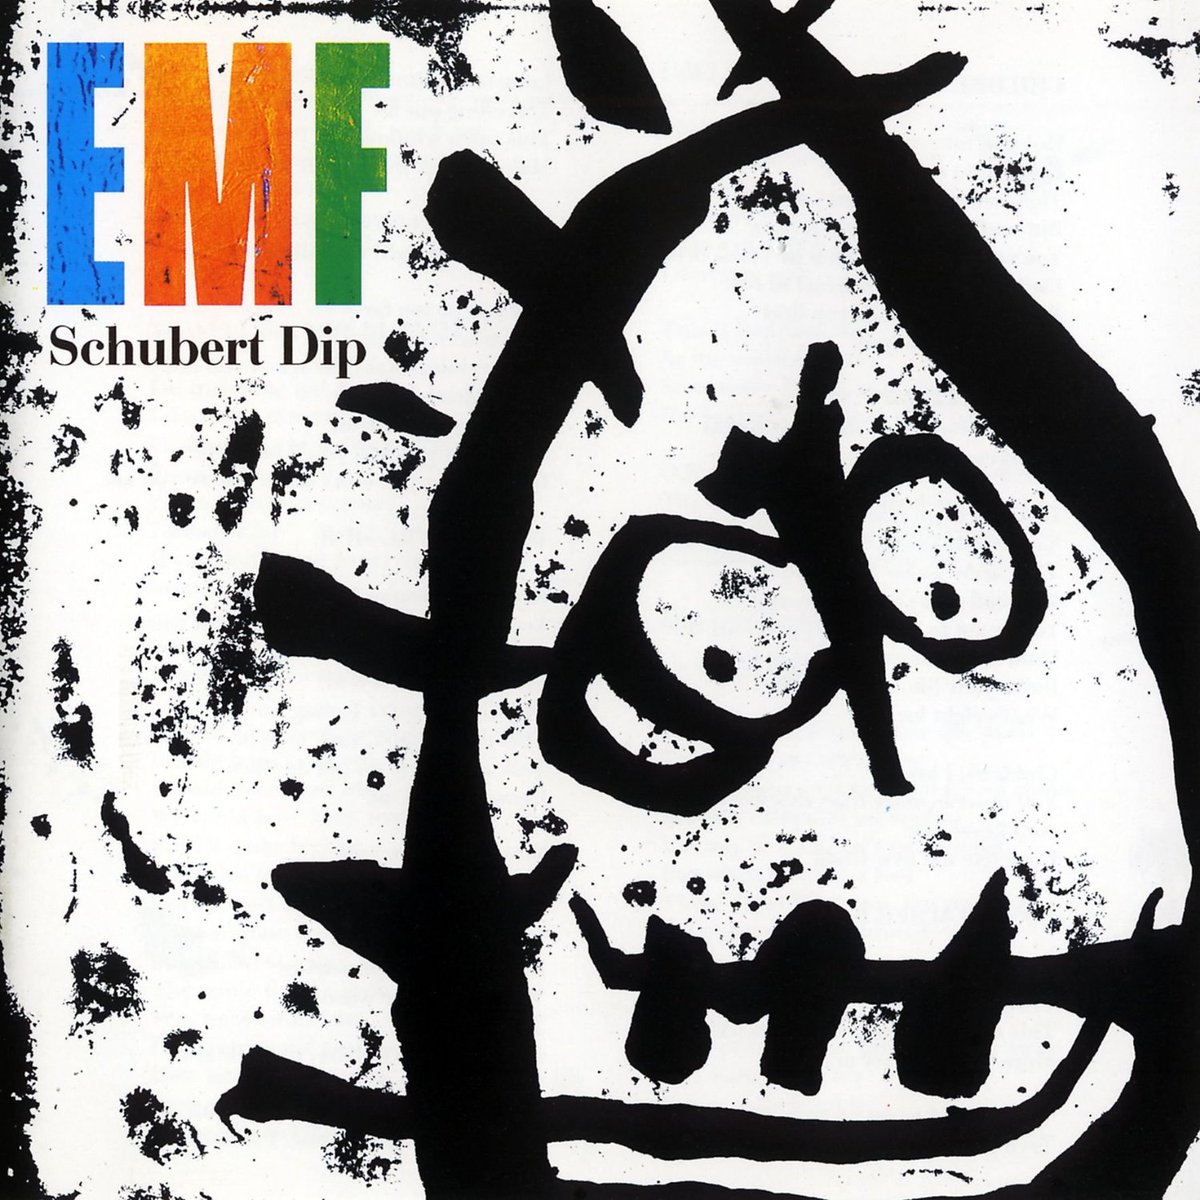 07.05.1991 r. - ukazał się debiutancki album studyjny zespołu EMF - Schubert Dip.
#EMF #rock #alternativerock #alternativedance